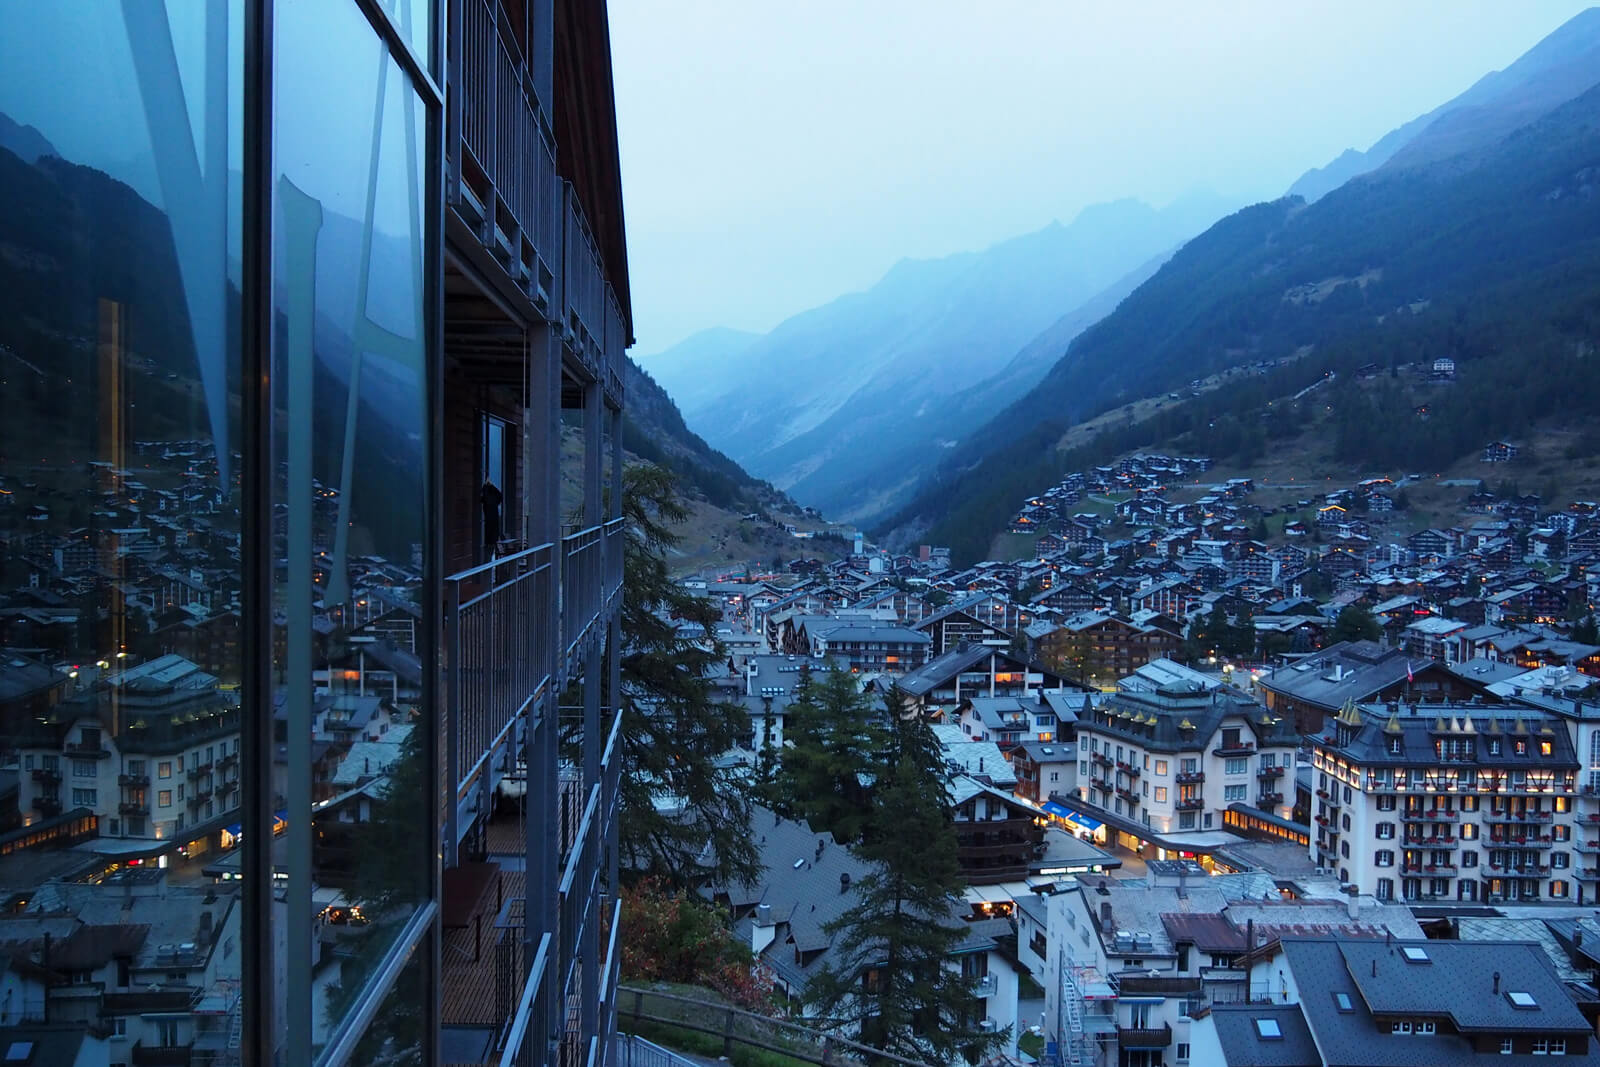 THE OMNIA Hotel Zermatt